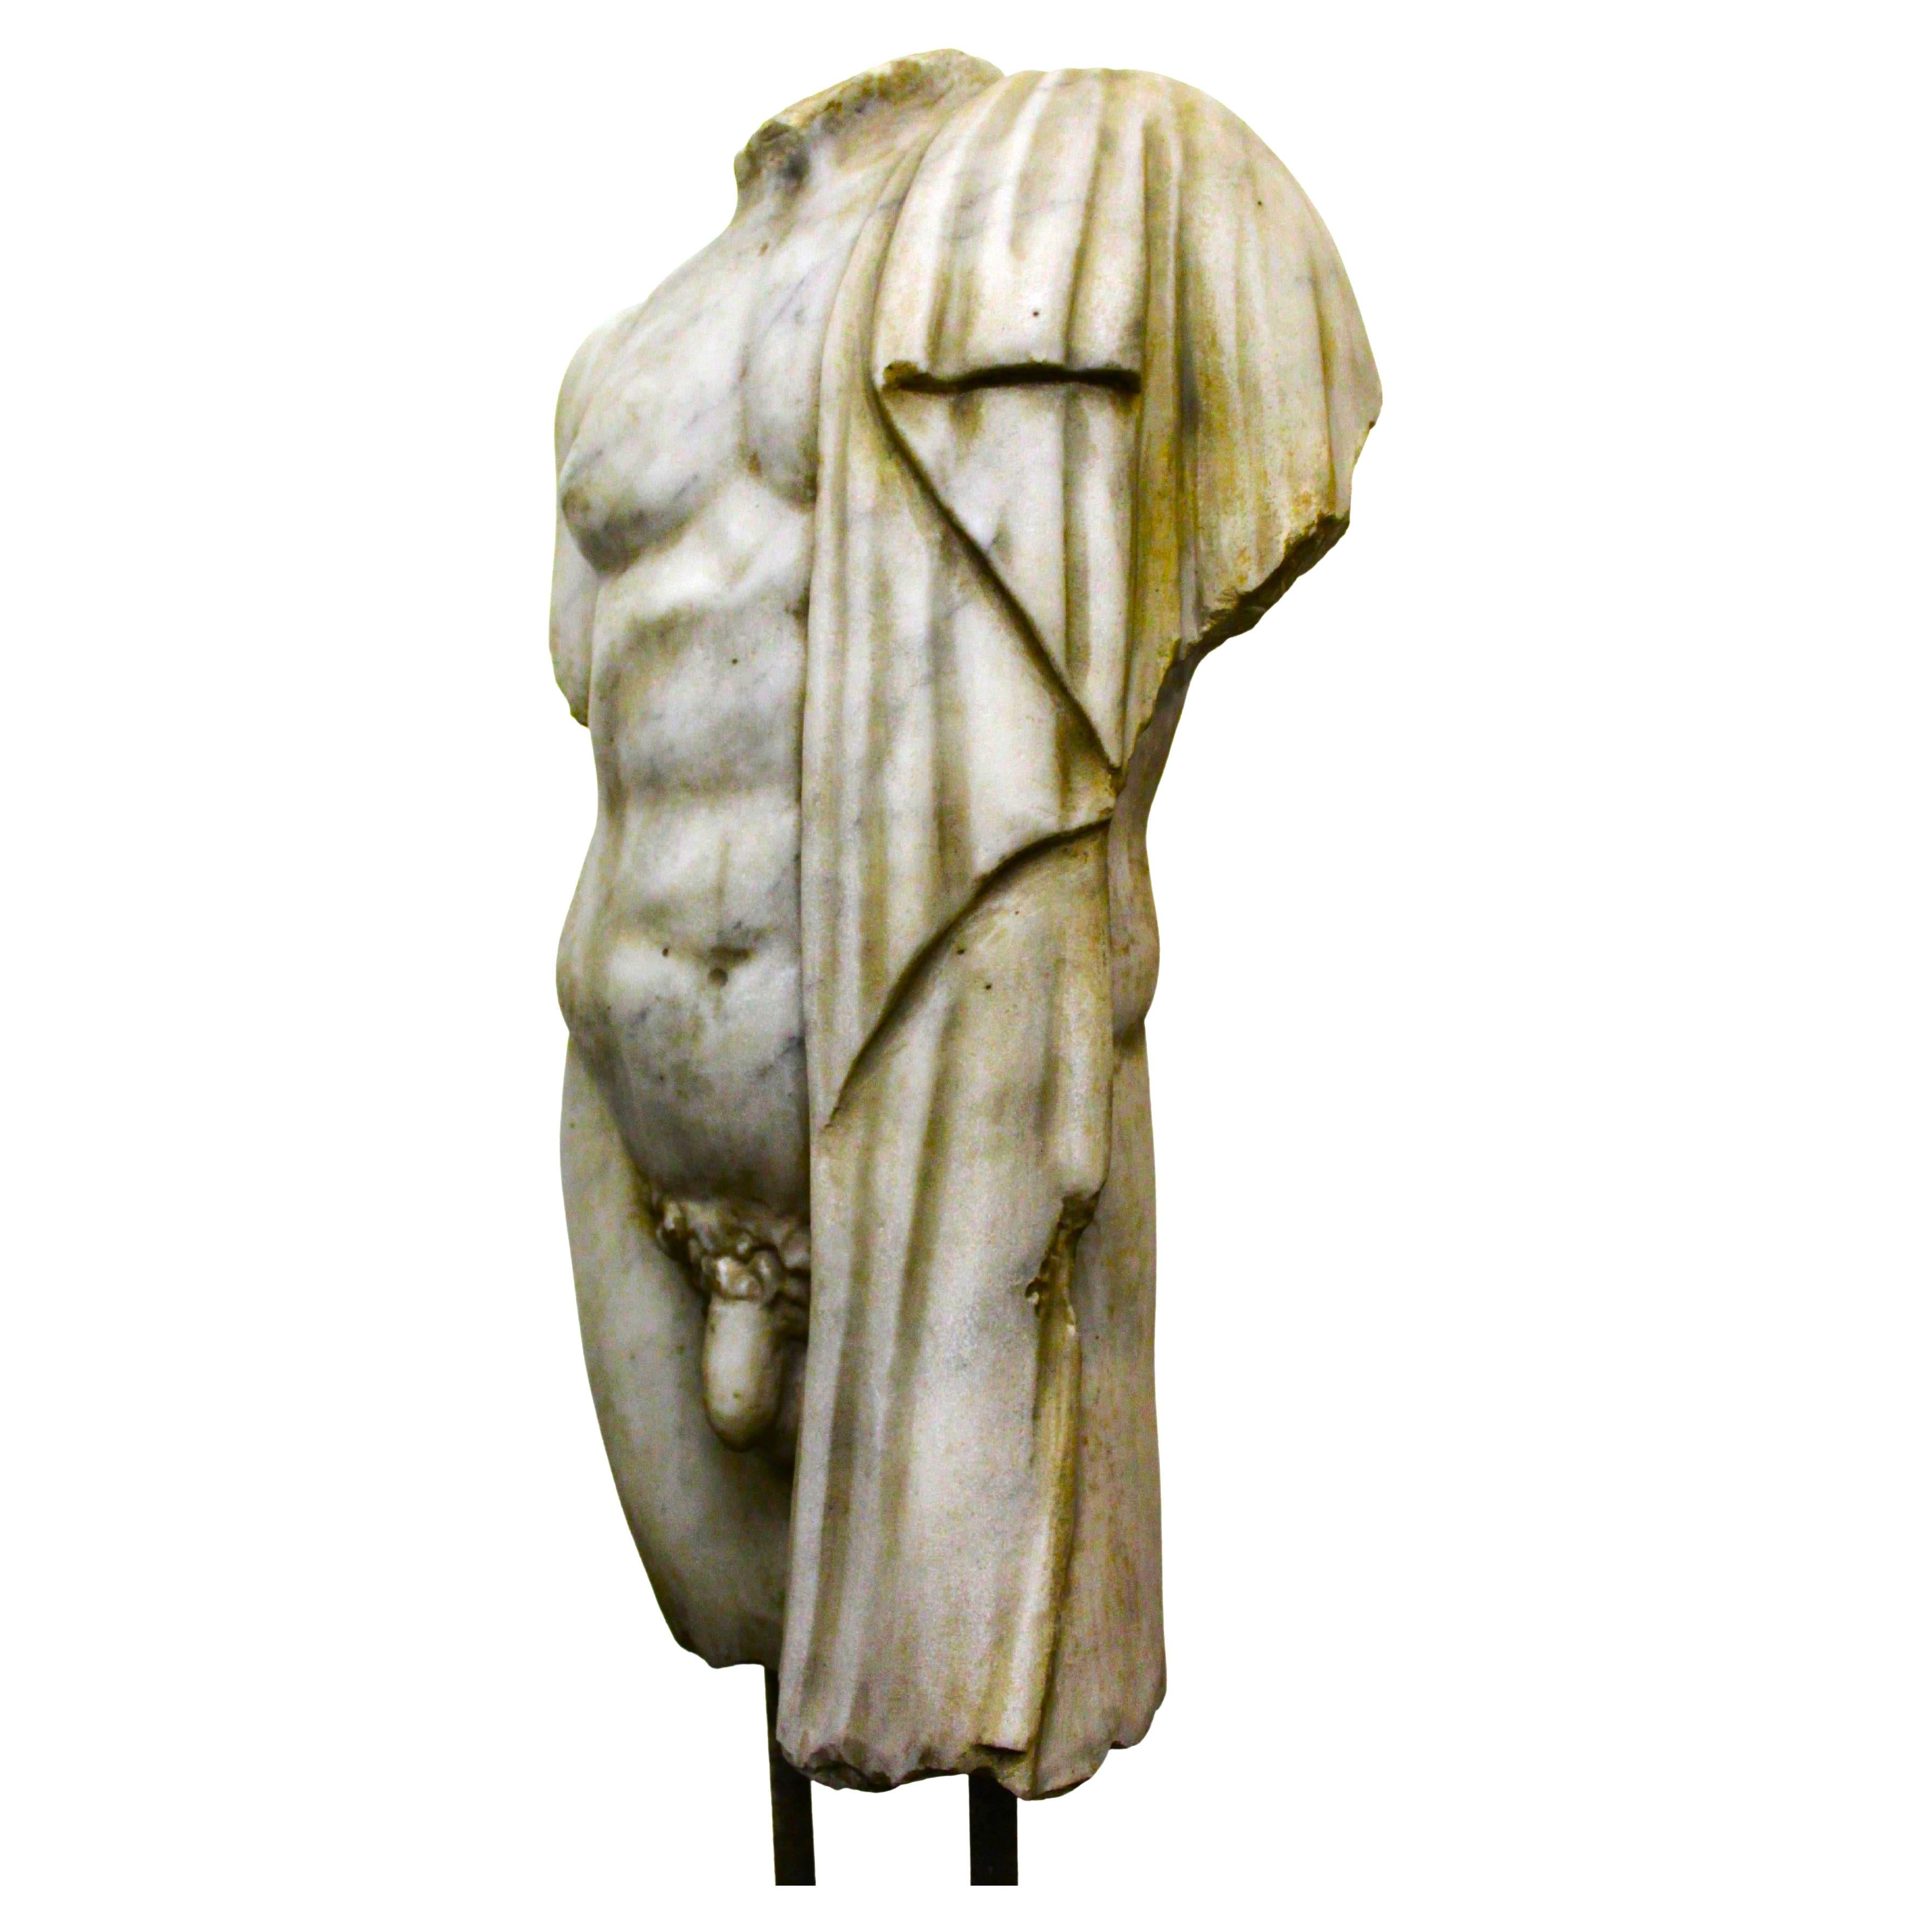 Torso sculpture in marble, 116 cm high, including base 

Torso in marmo, alto 116 c, compreso di base.